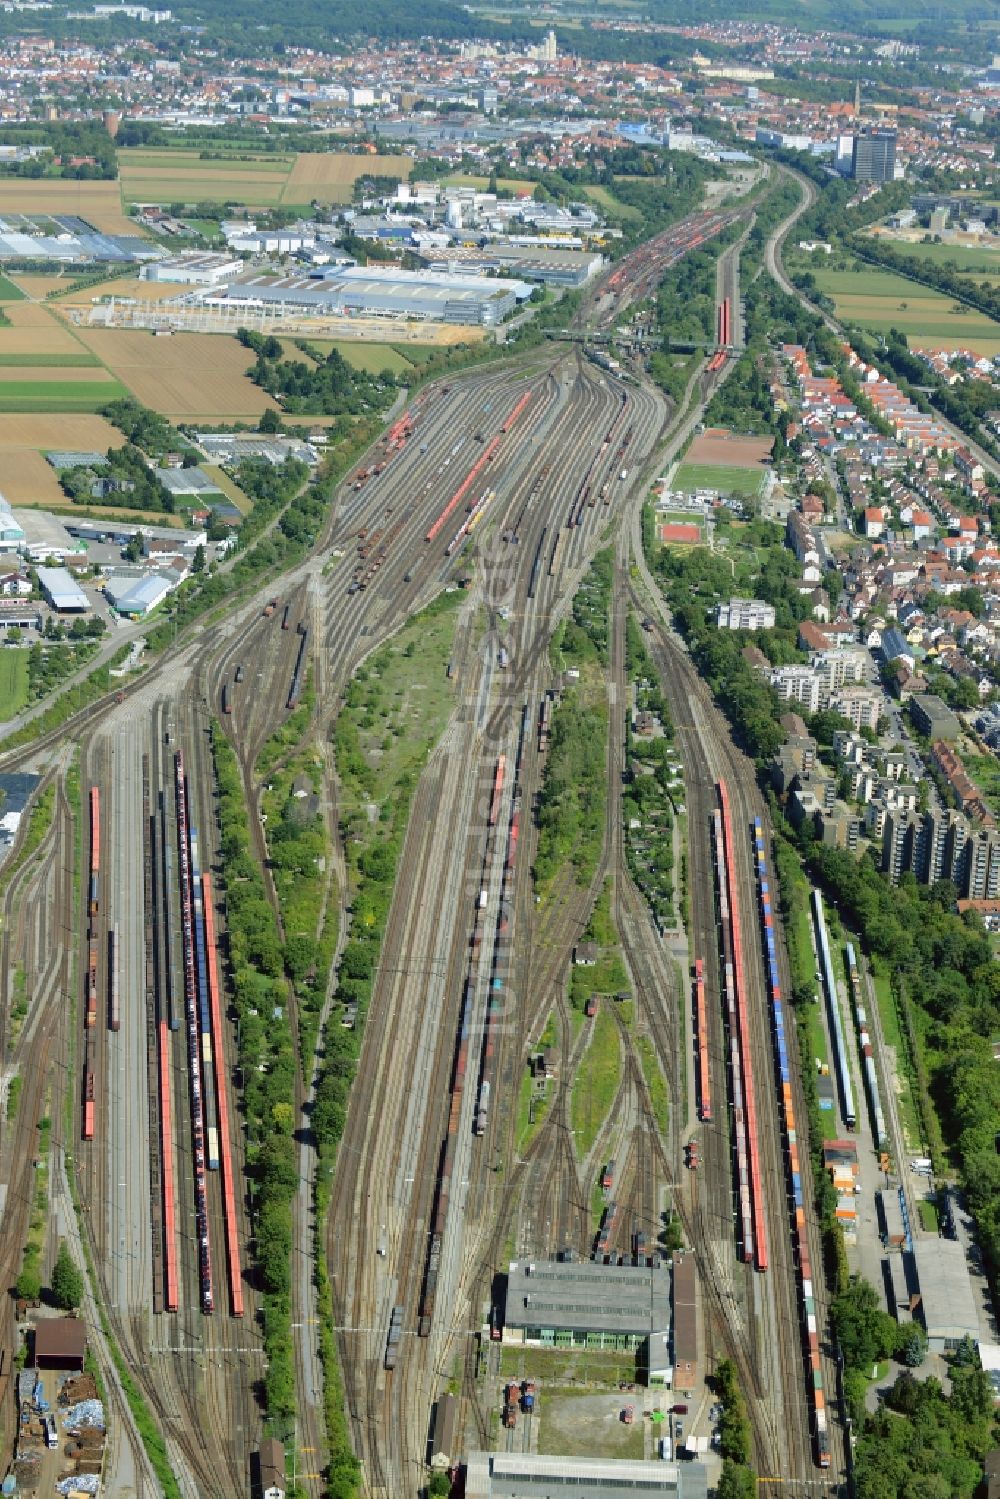 Luftbild Kornwestheim - Bahngleise des Rangierbahnhof und Güterbahnhof der Deutschen Bahn in Kornwestheim im Bundesland Baden-Württemberg